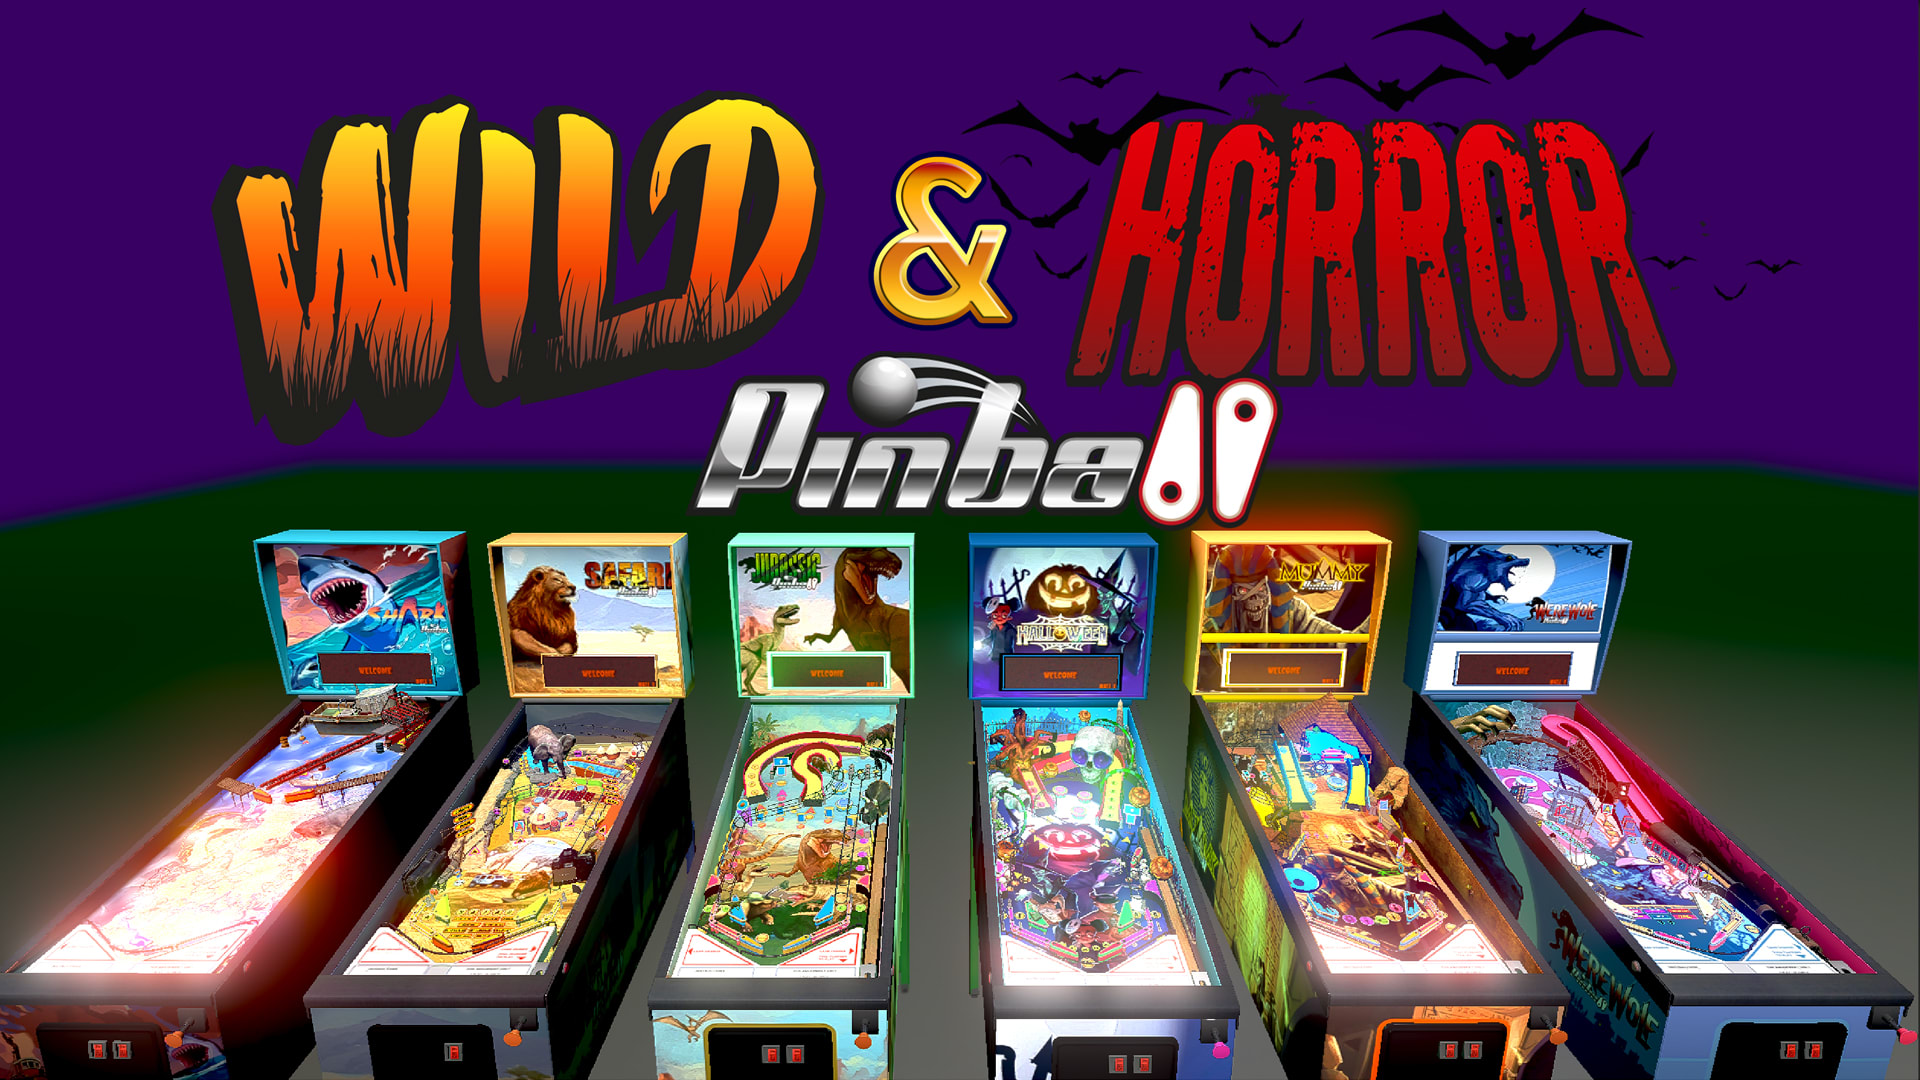 Wild & Horror Pinball